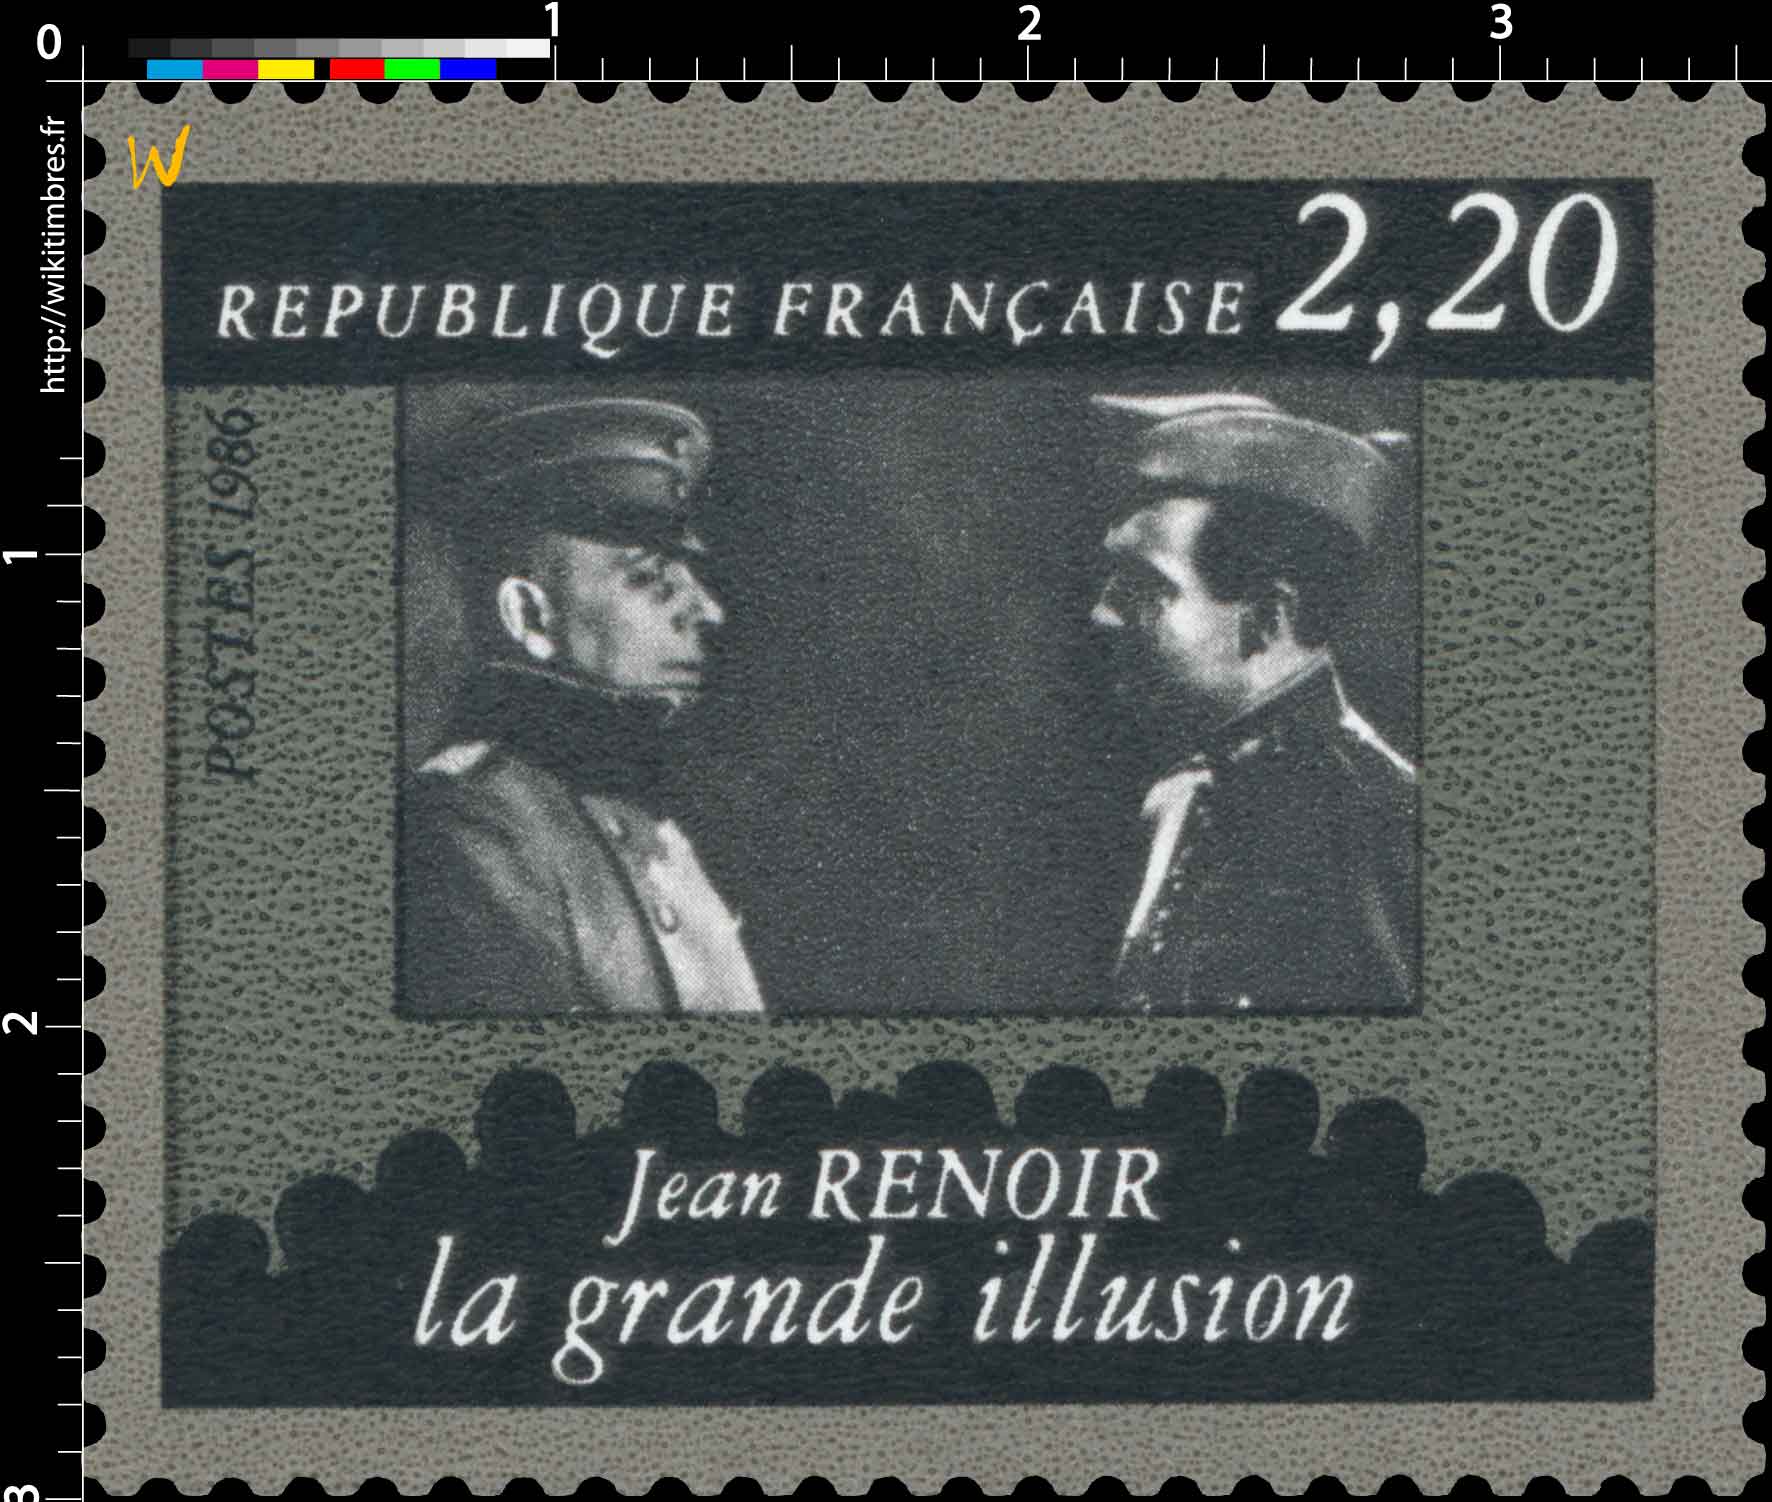 1986 Jean RENOIR la grande illusion